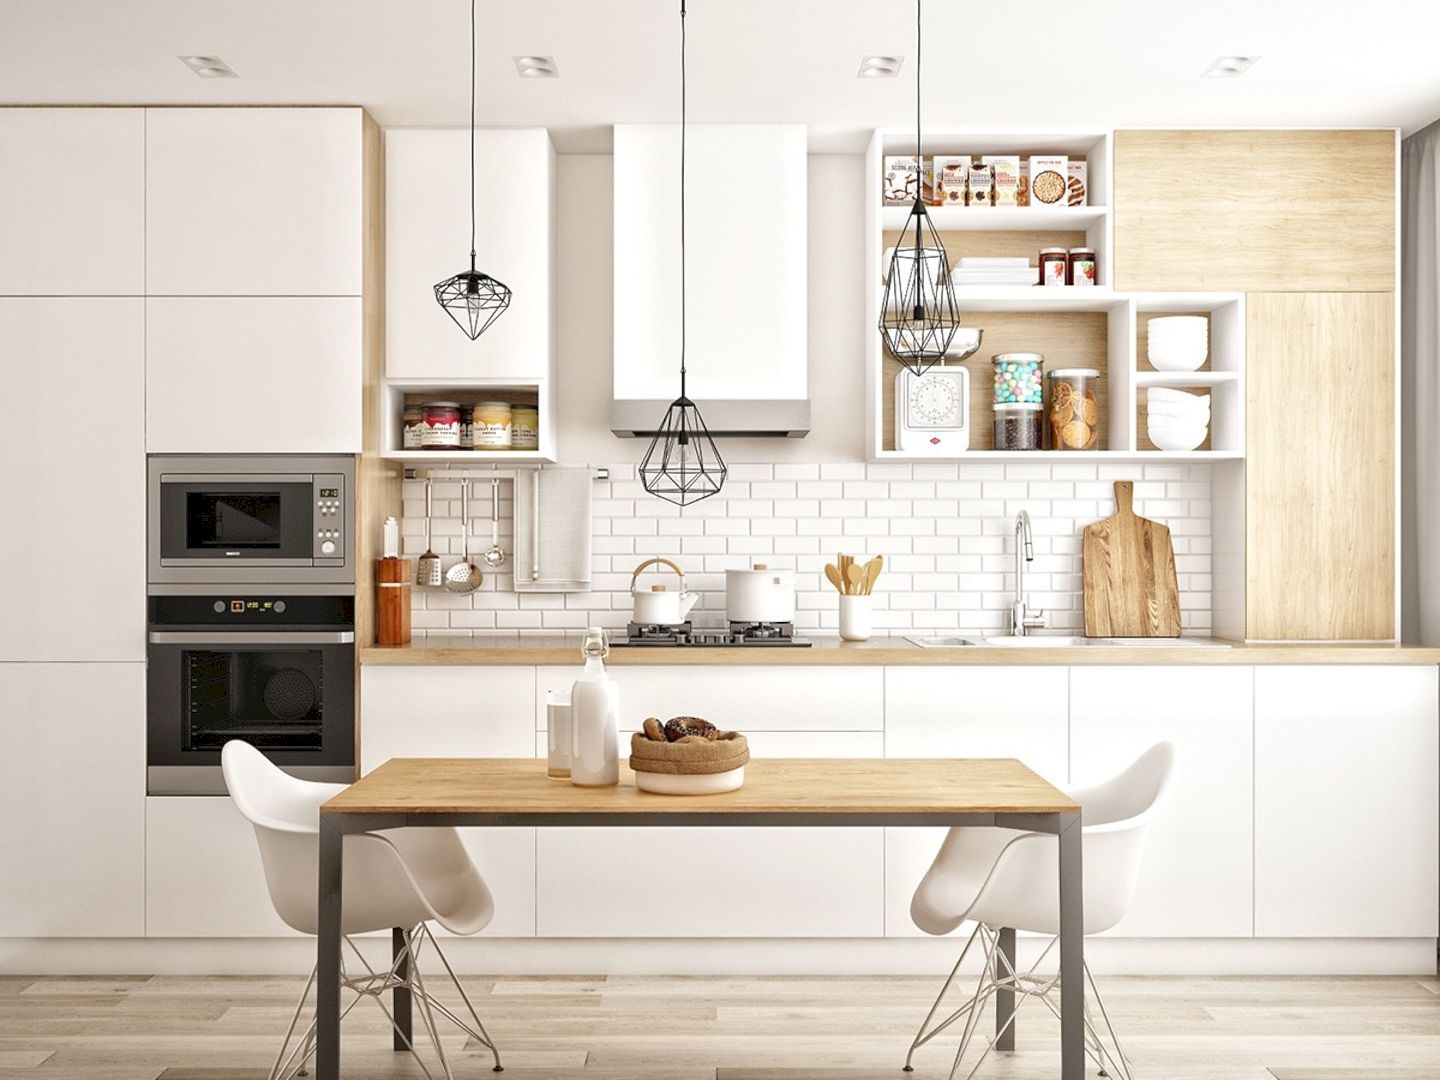 5 design elements of a Scandinavian kitchen